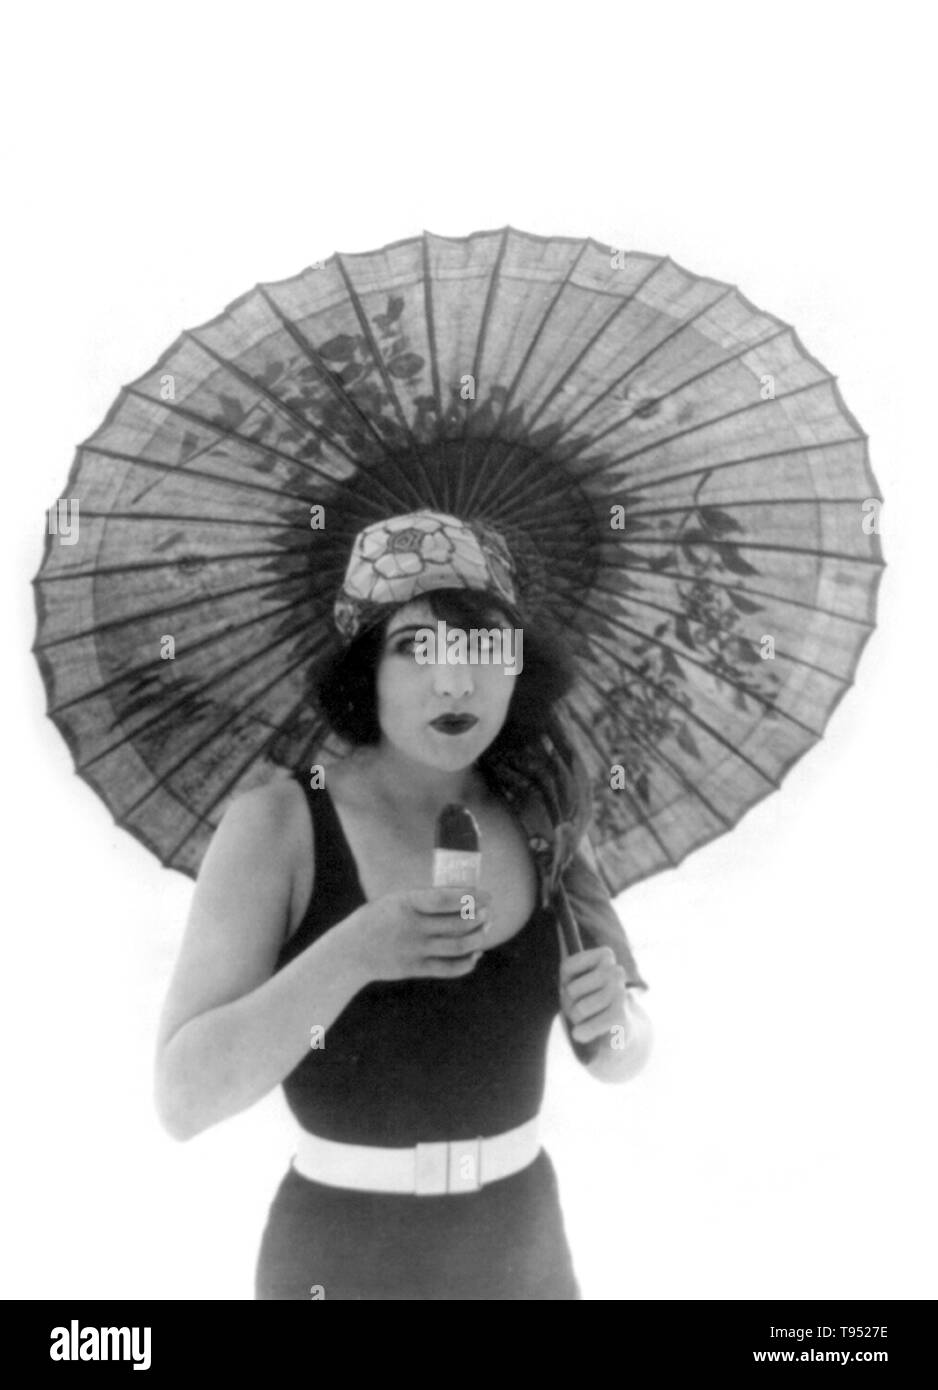 Titel: "Betty Compson mit Sonnenschirm, in Badehose, Blick leicht nach rechts, essen Eskimo Pie." Betty Compson (März 19, 1897 - April 18, 1974) war ein US-amerikanischer Schauspieler und Filmproduzent. Die meisten berühmten in Stummfilmen und frühen Tonfilms, ist sie am besten in ihre Performances in den Docks von New York und von Barker, Letztere verdienen eine Nominierung für den Academy Award für die beste Schauspielerin bekannt. Ihre Popularität erlaubte ihr kreative Kontrolle über Ihre Filme zu haben, wie sie auch in der Lage war, zu produzieren. Stockfoto